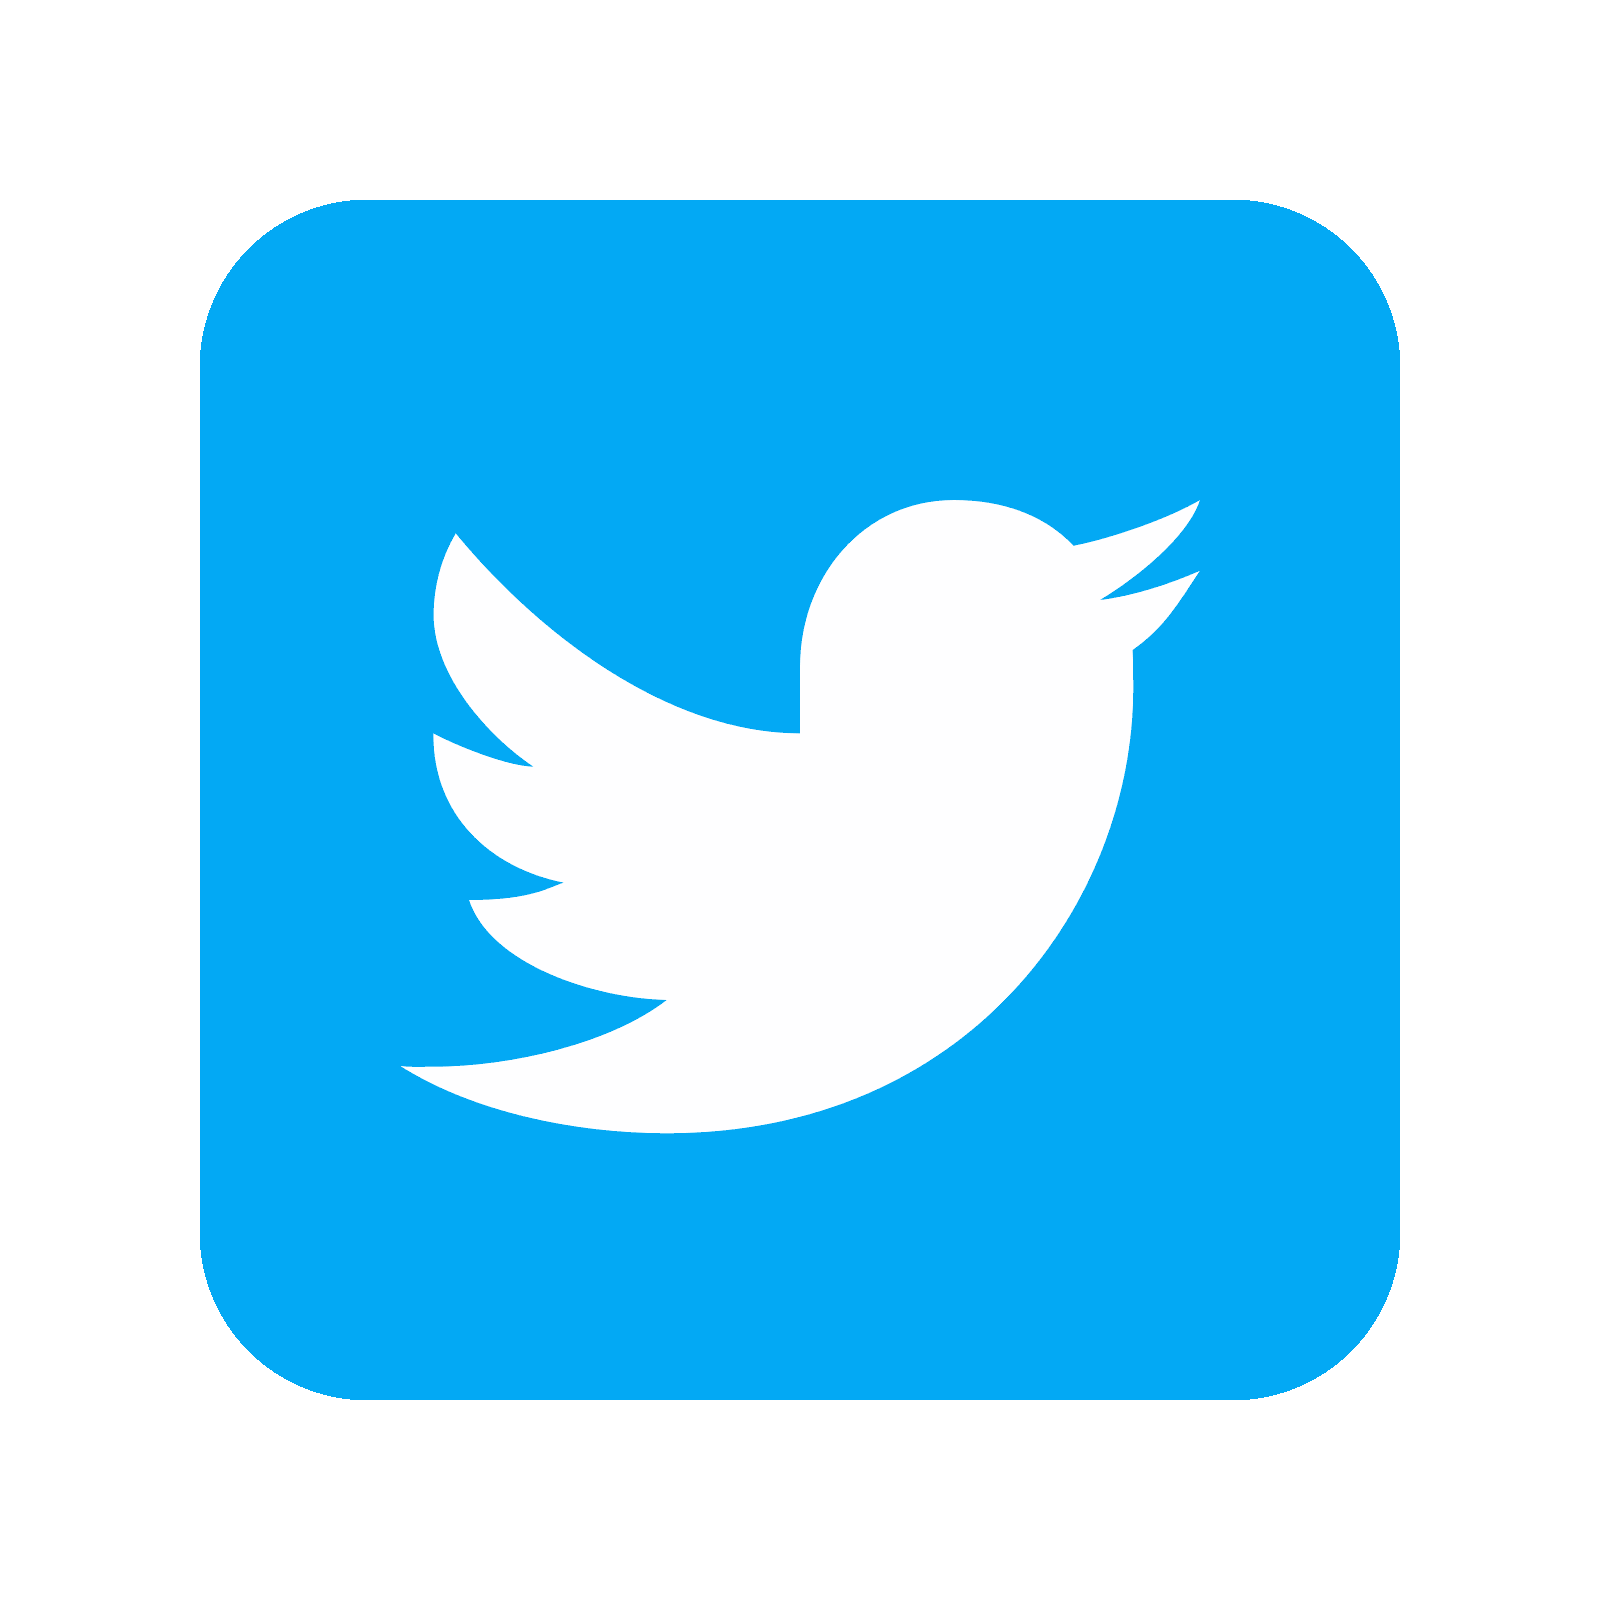 Tweet Logo PNG Picture